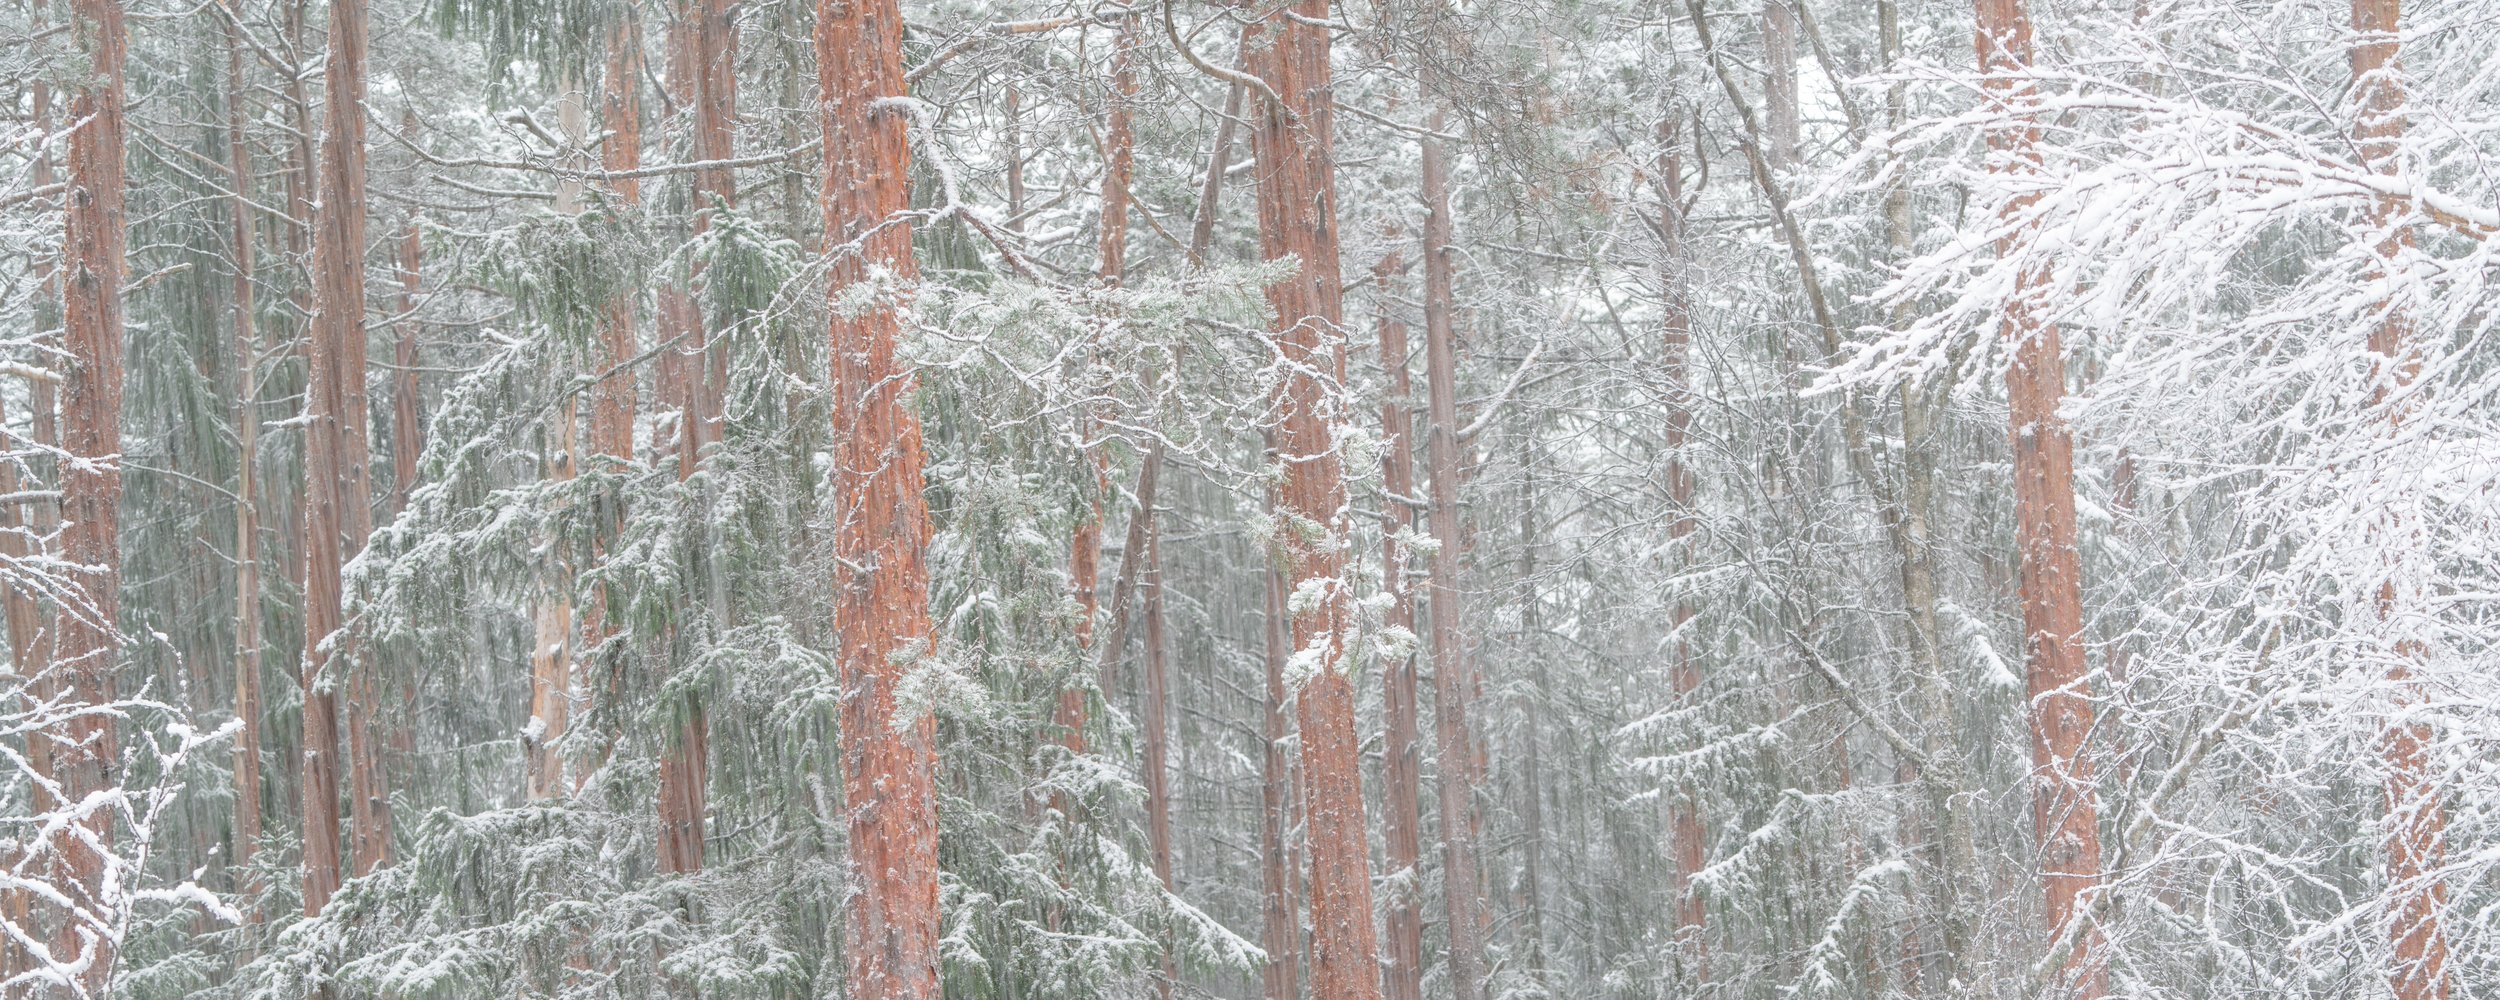 Kiefernwald im Winter 